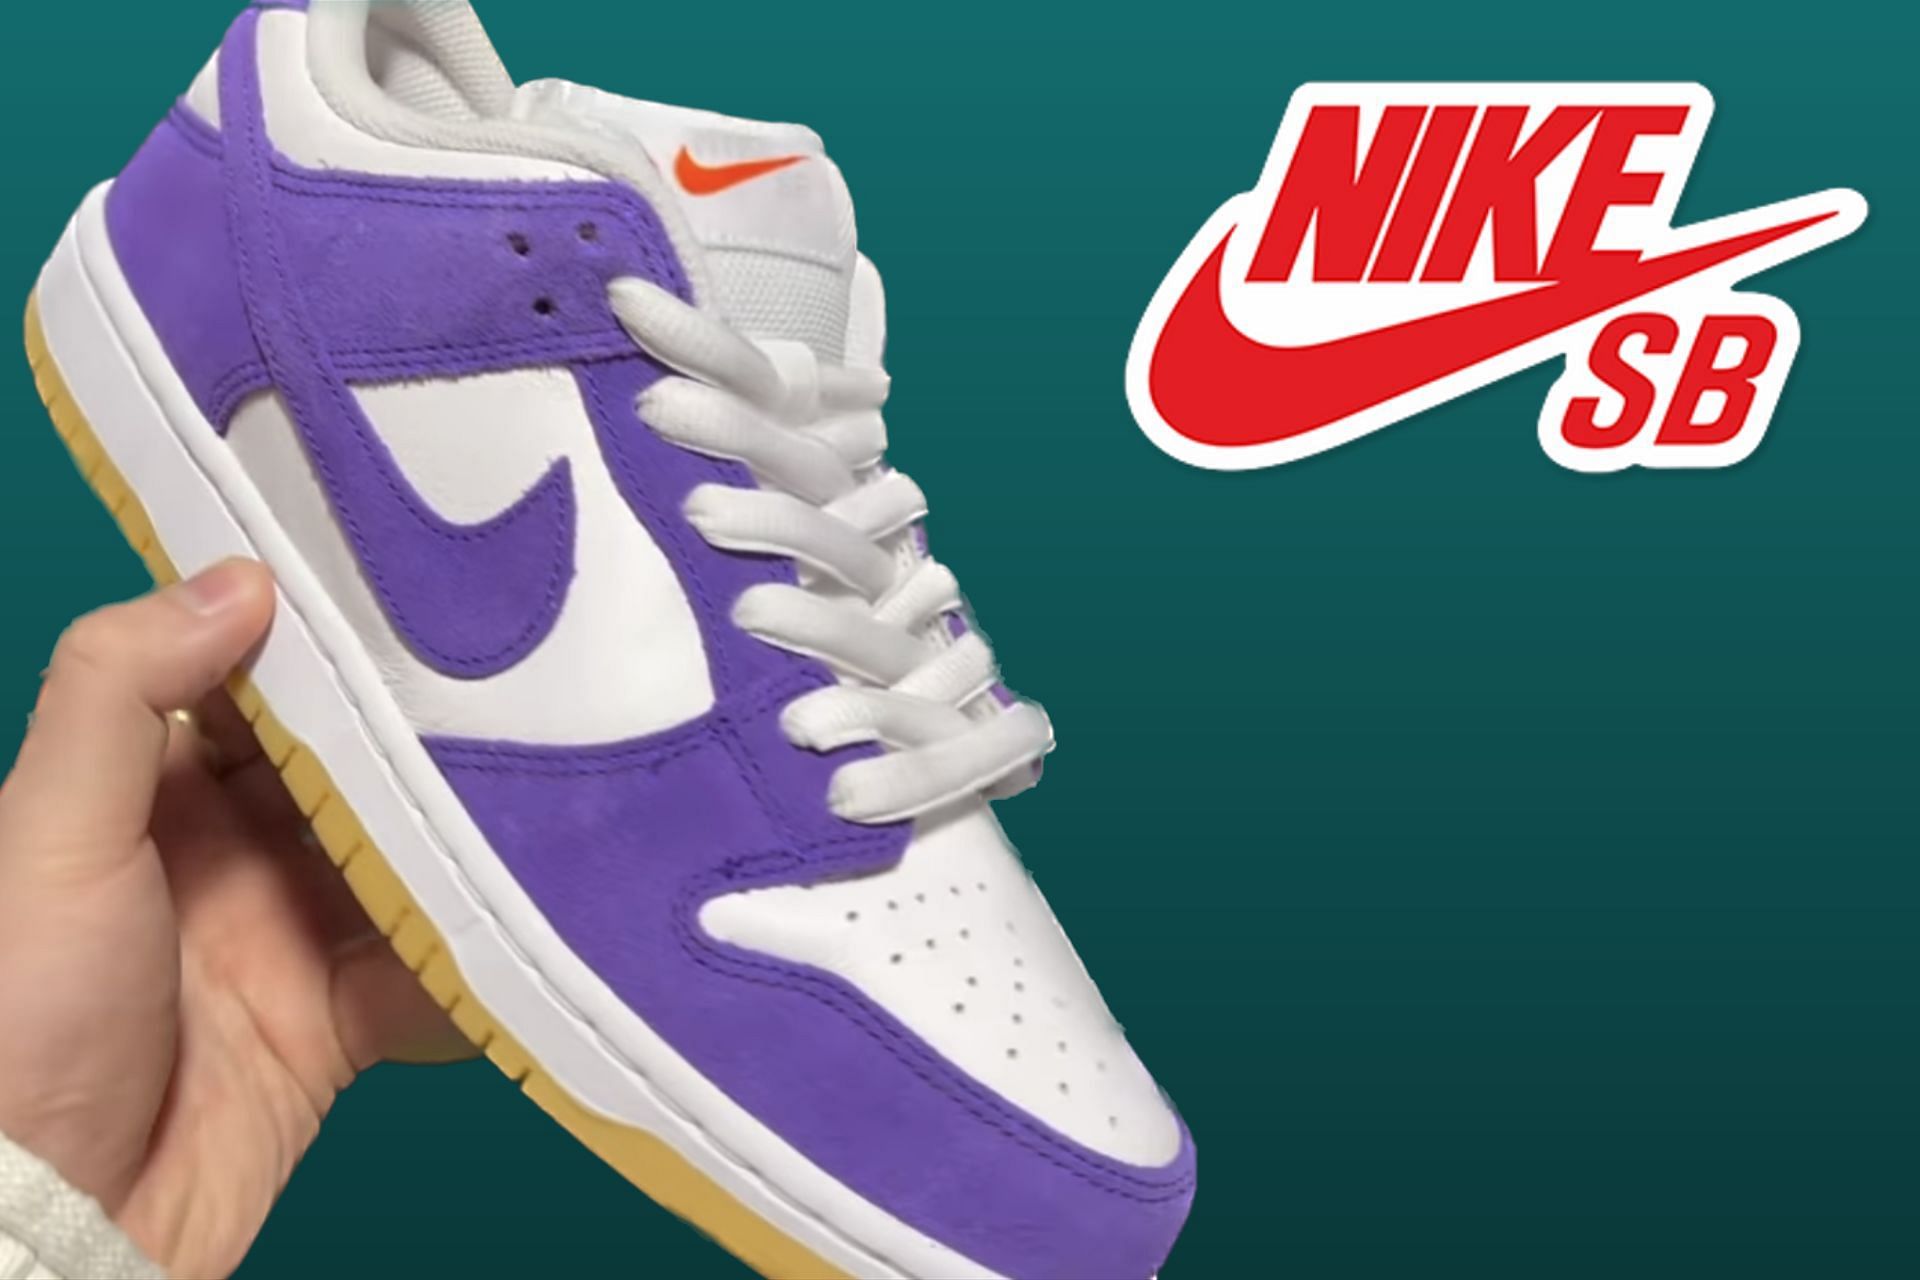 Nike SB Dunk Low Court Purple Gum sneakers (Image via Sportskeeda)